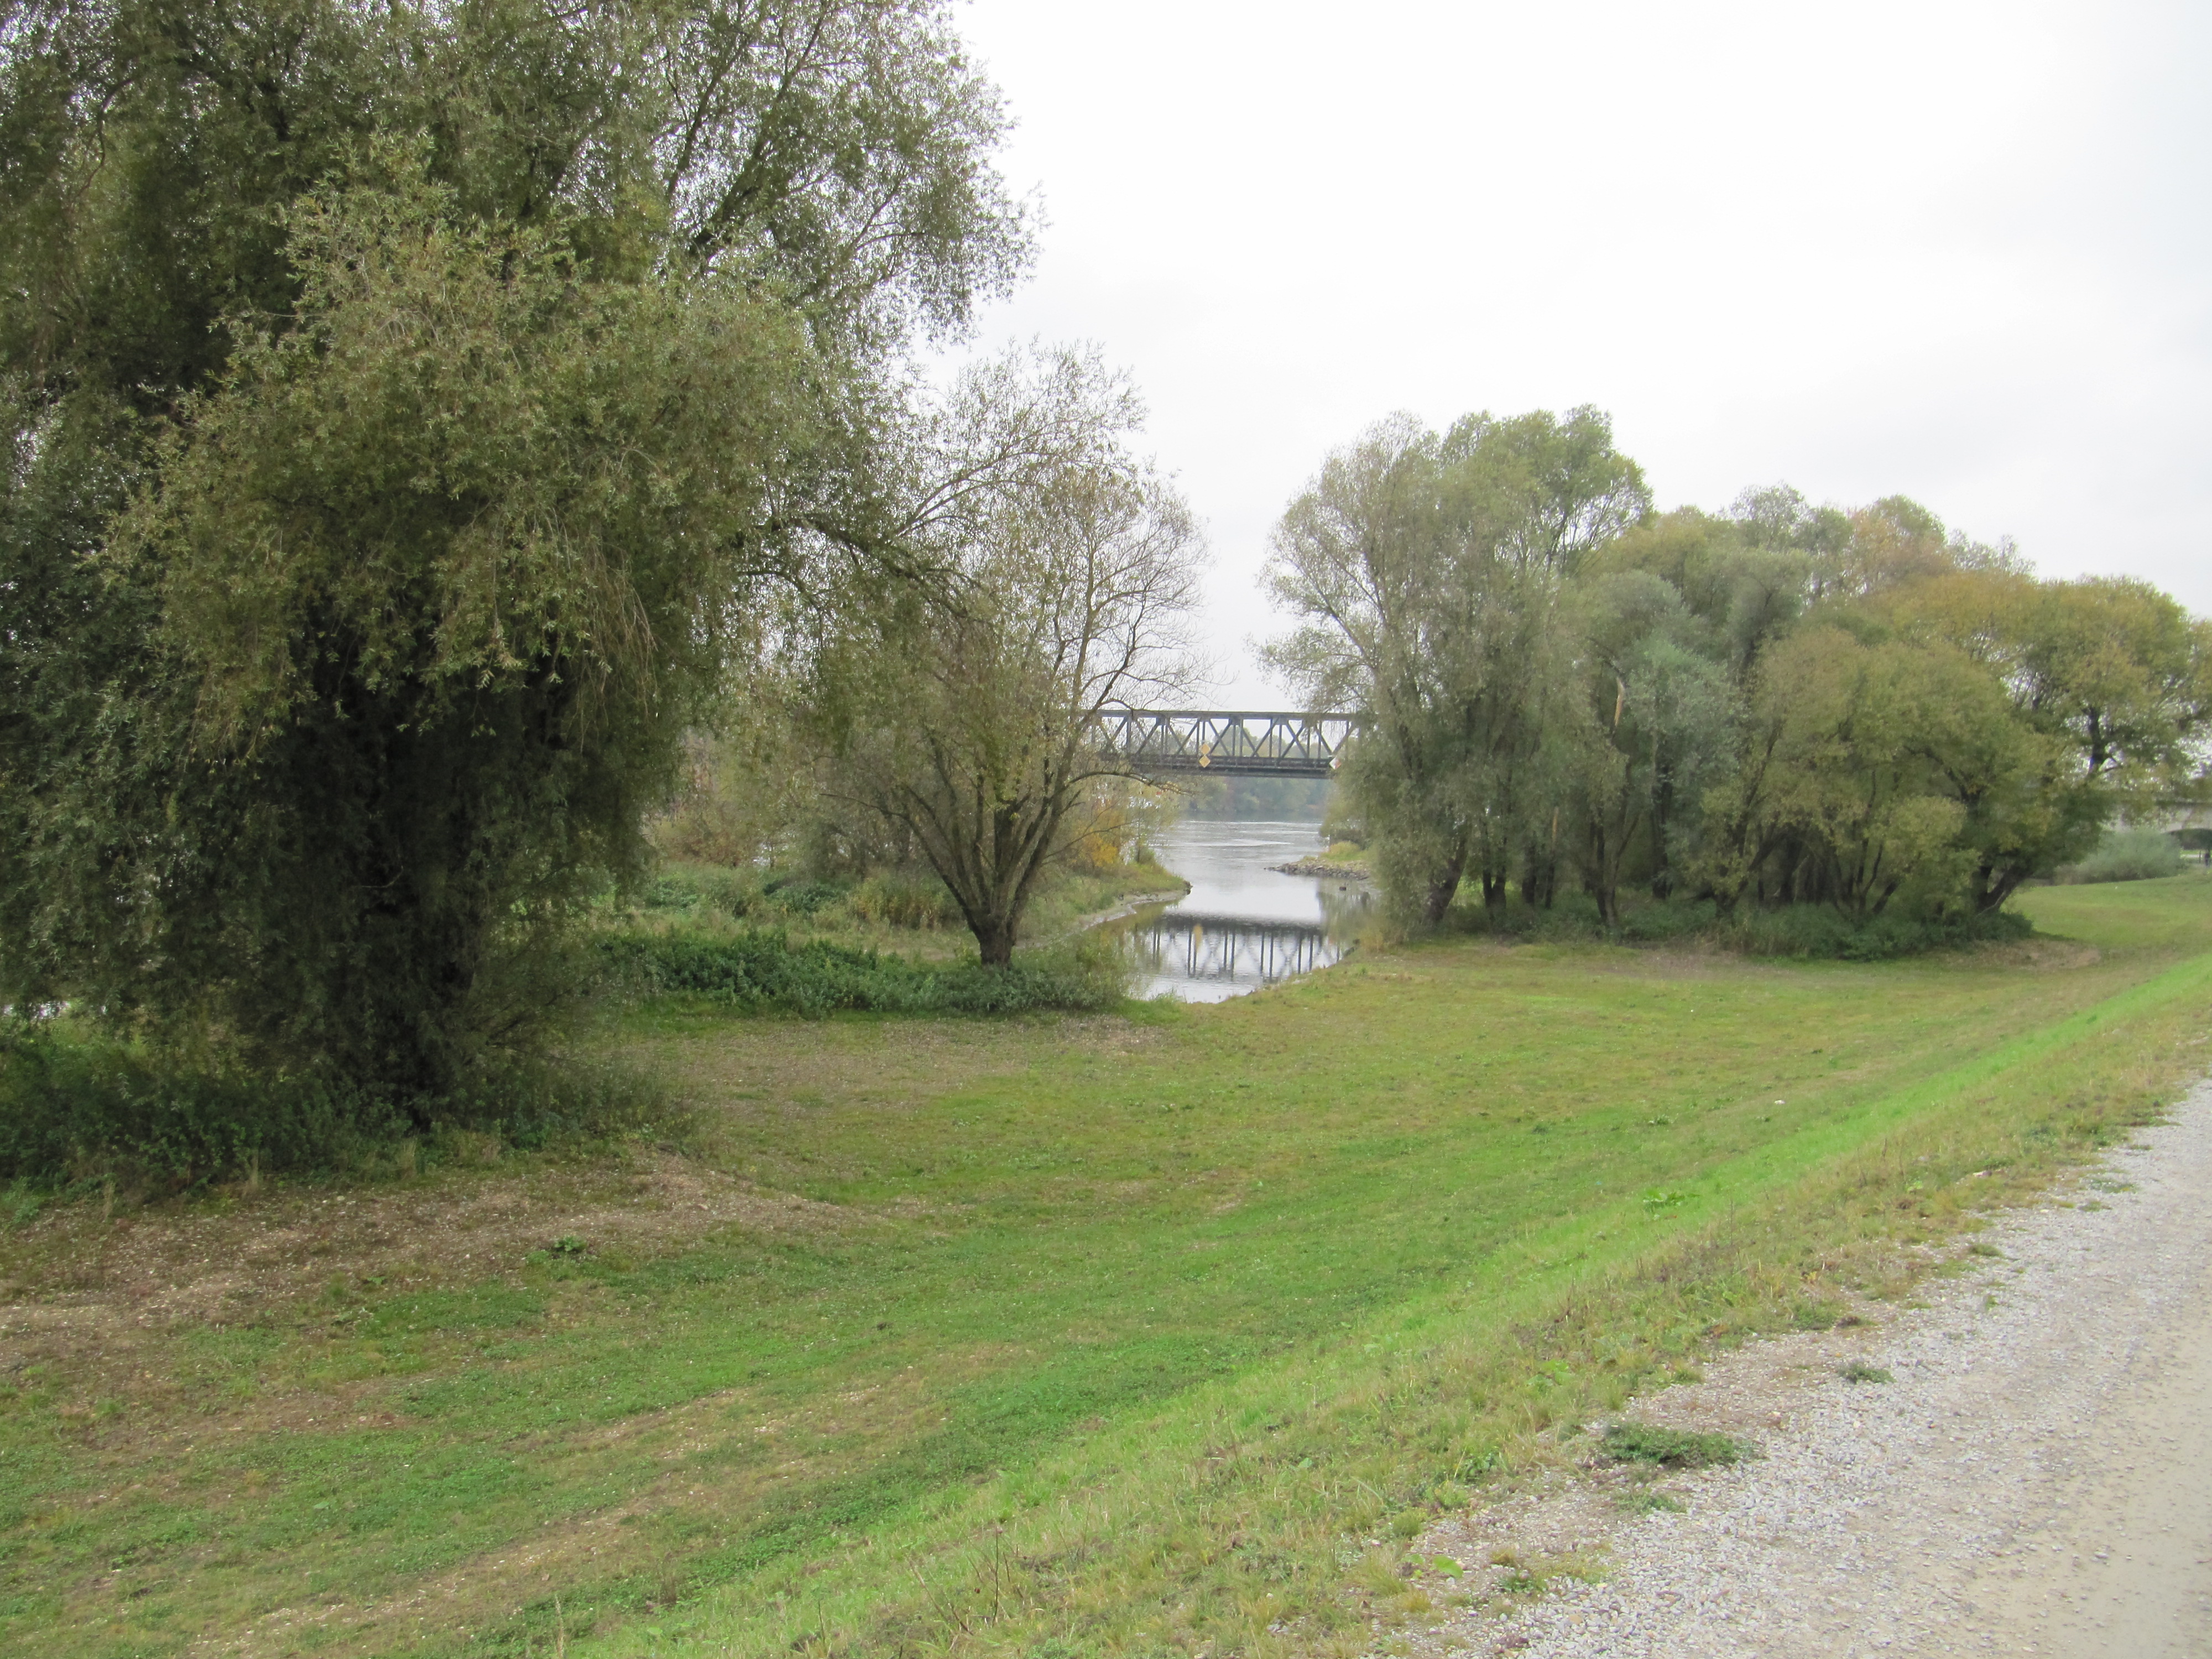 Donaunebenarm mit Bepflanzung auf beiden Seiten, im Hintergrund die Eisenbahnbrücke